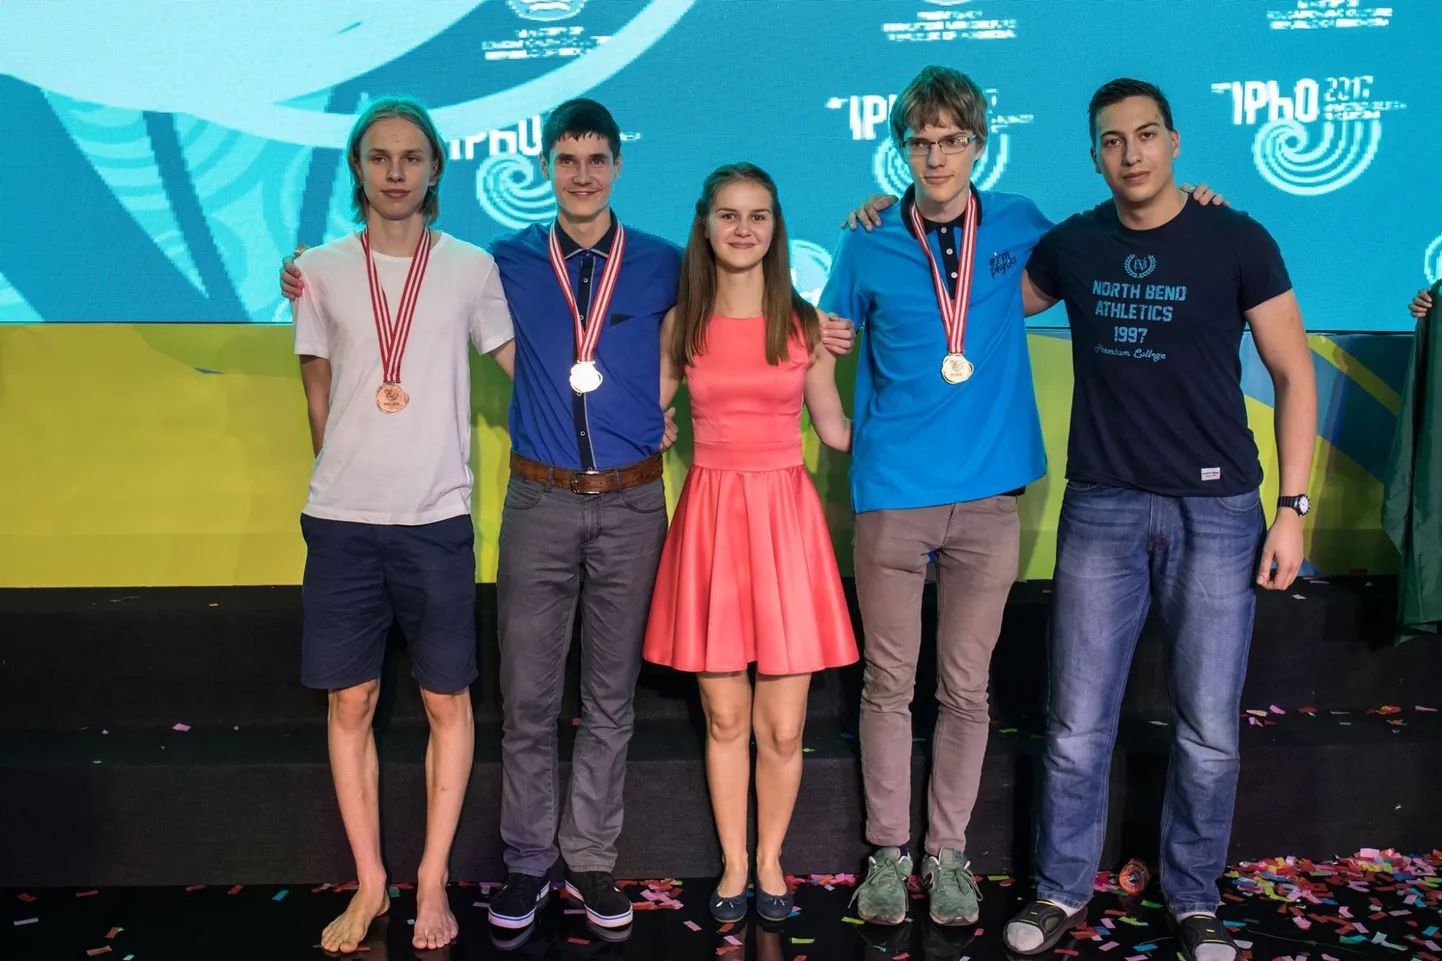 Eesti võistkonda kuulusid (vasakult) Kaarel Kivisalu, Konstantin Dukatš, Eva-Maria Tõnson, Taavet Kalda ja Roman Oleinik